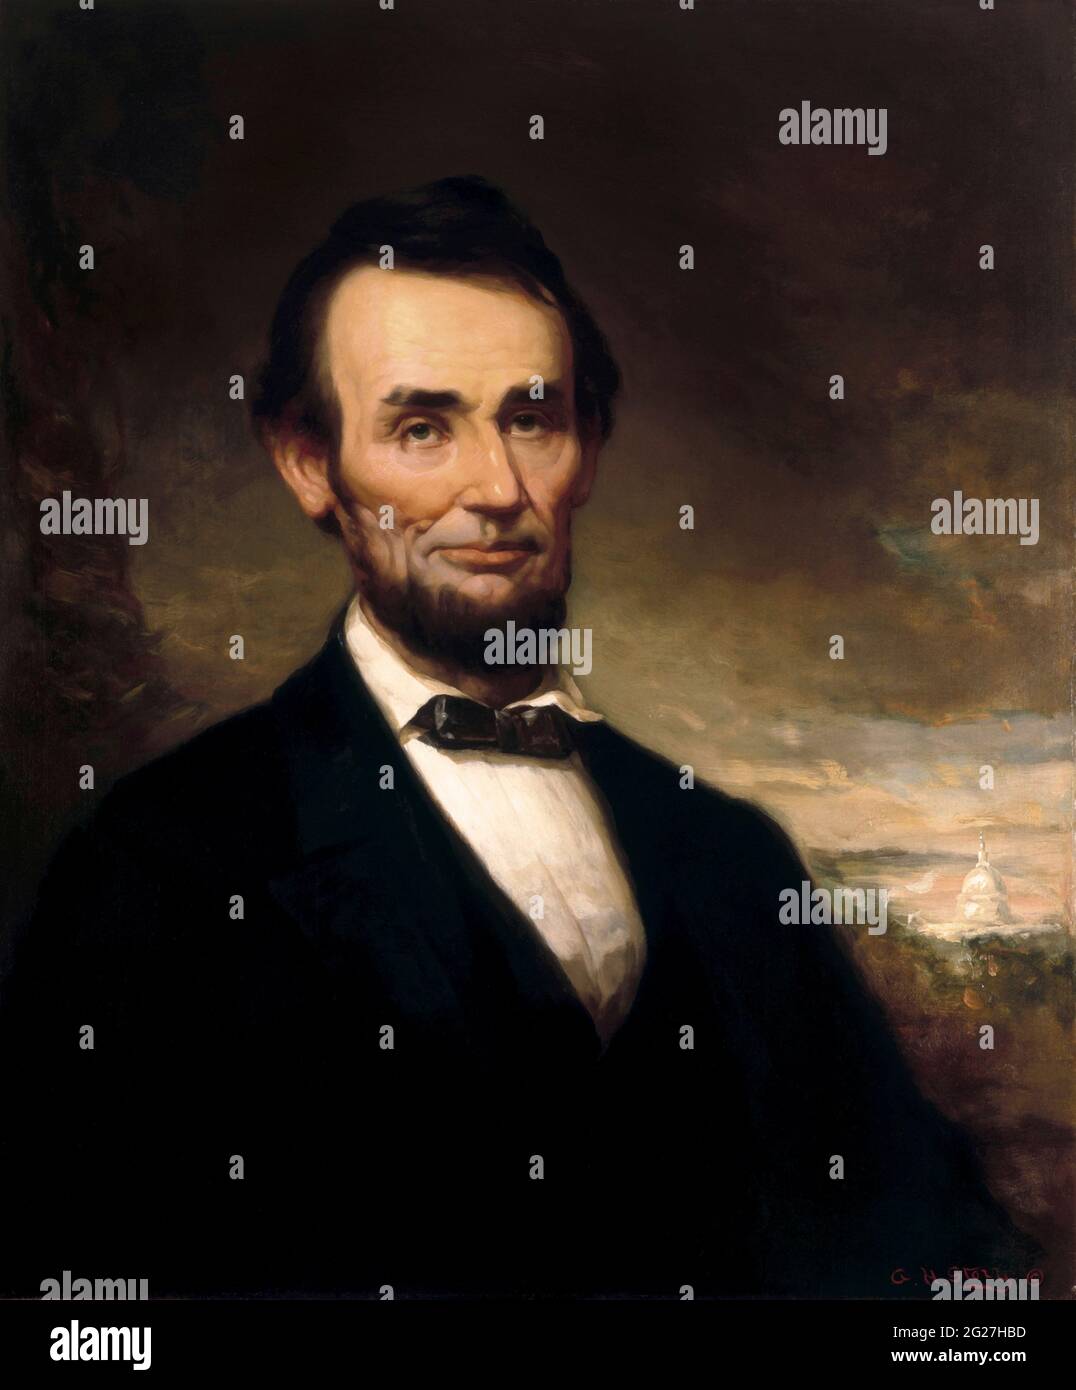 Präsidentenportrait des 16. US-Präsidenten Abraham Lincoln. Stockfoto